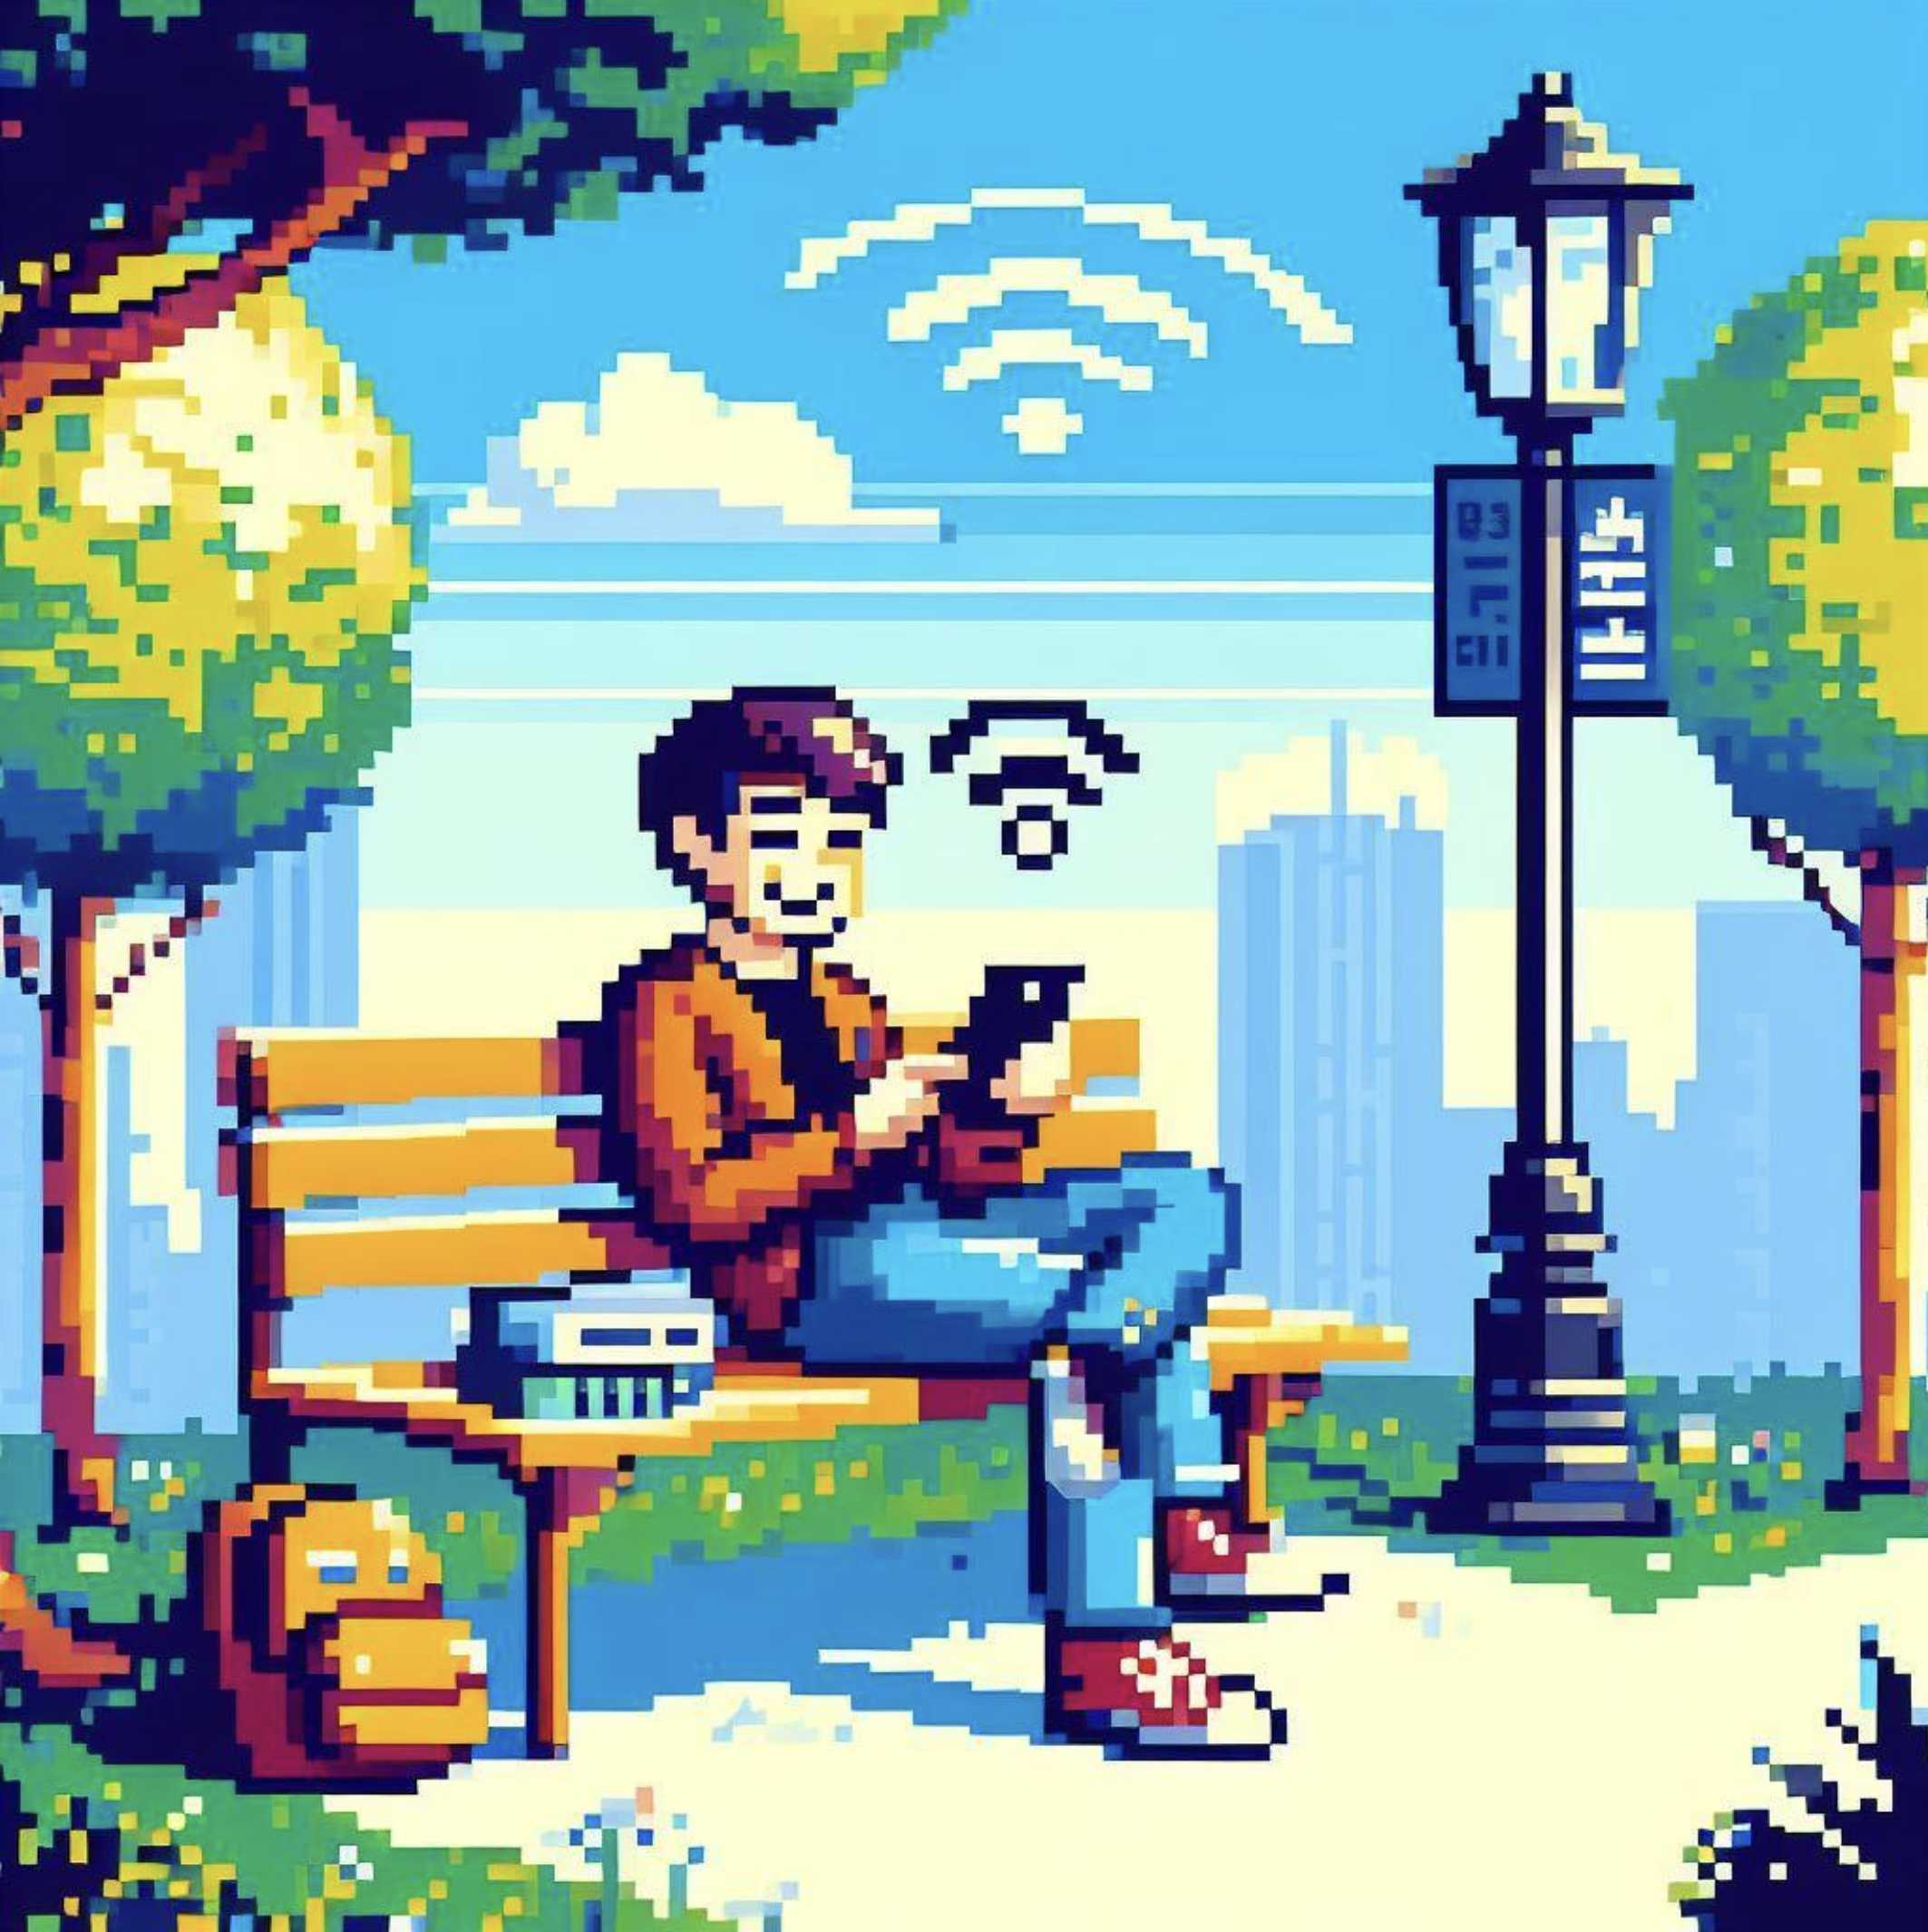 A tourist using public Wi-Fi